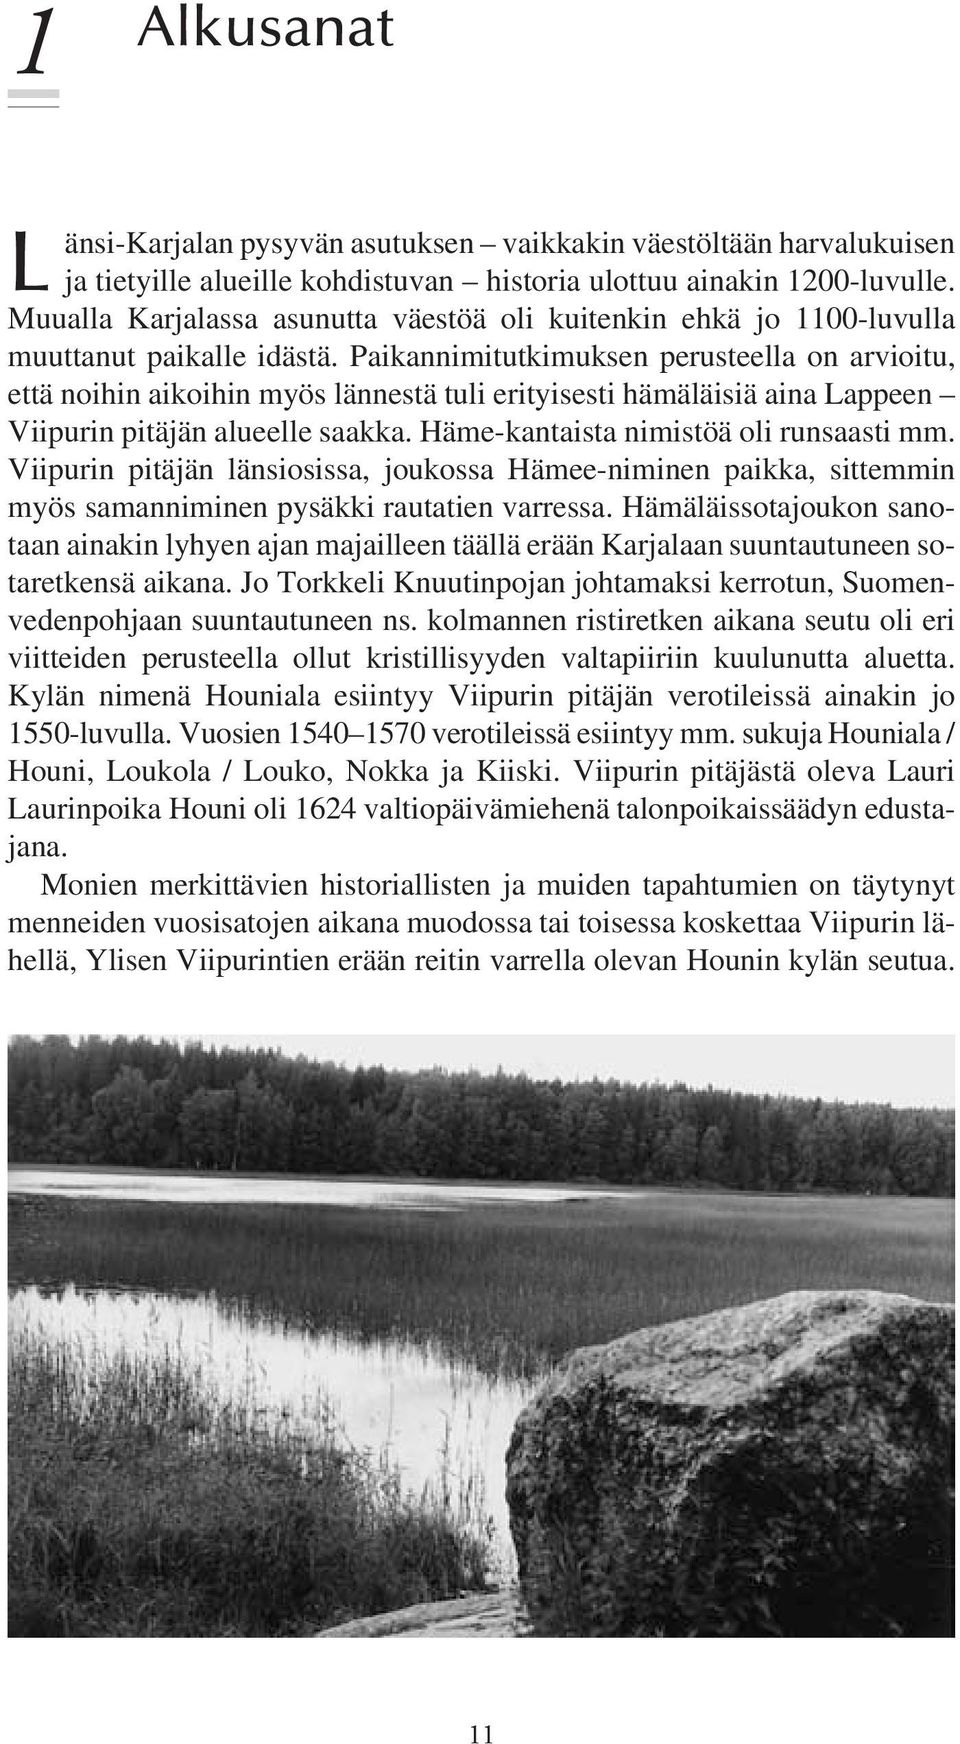 Paikannimitutkimuksen perusteella on arvioitu, että noihin aikoihin myös lännestä tuli erityisesti hämäläisiä aina Lappeen Viipurin pitäjän alueelle saakka. Häme-kantaista nimistöä oli runsaasti mm.